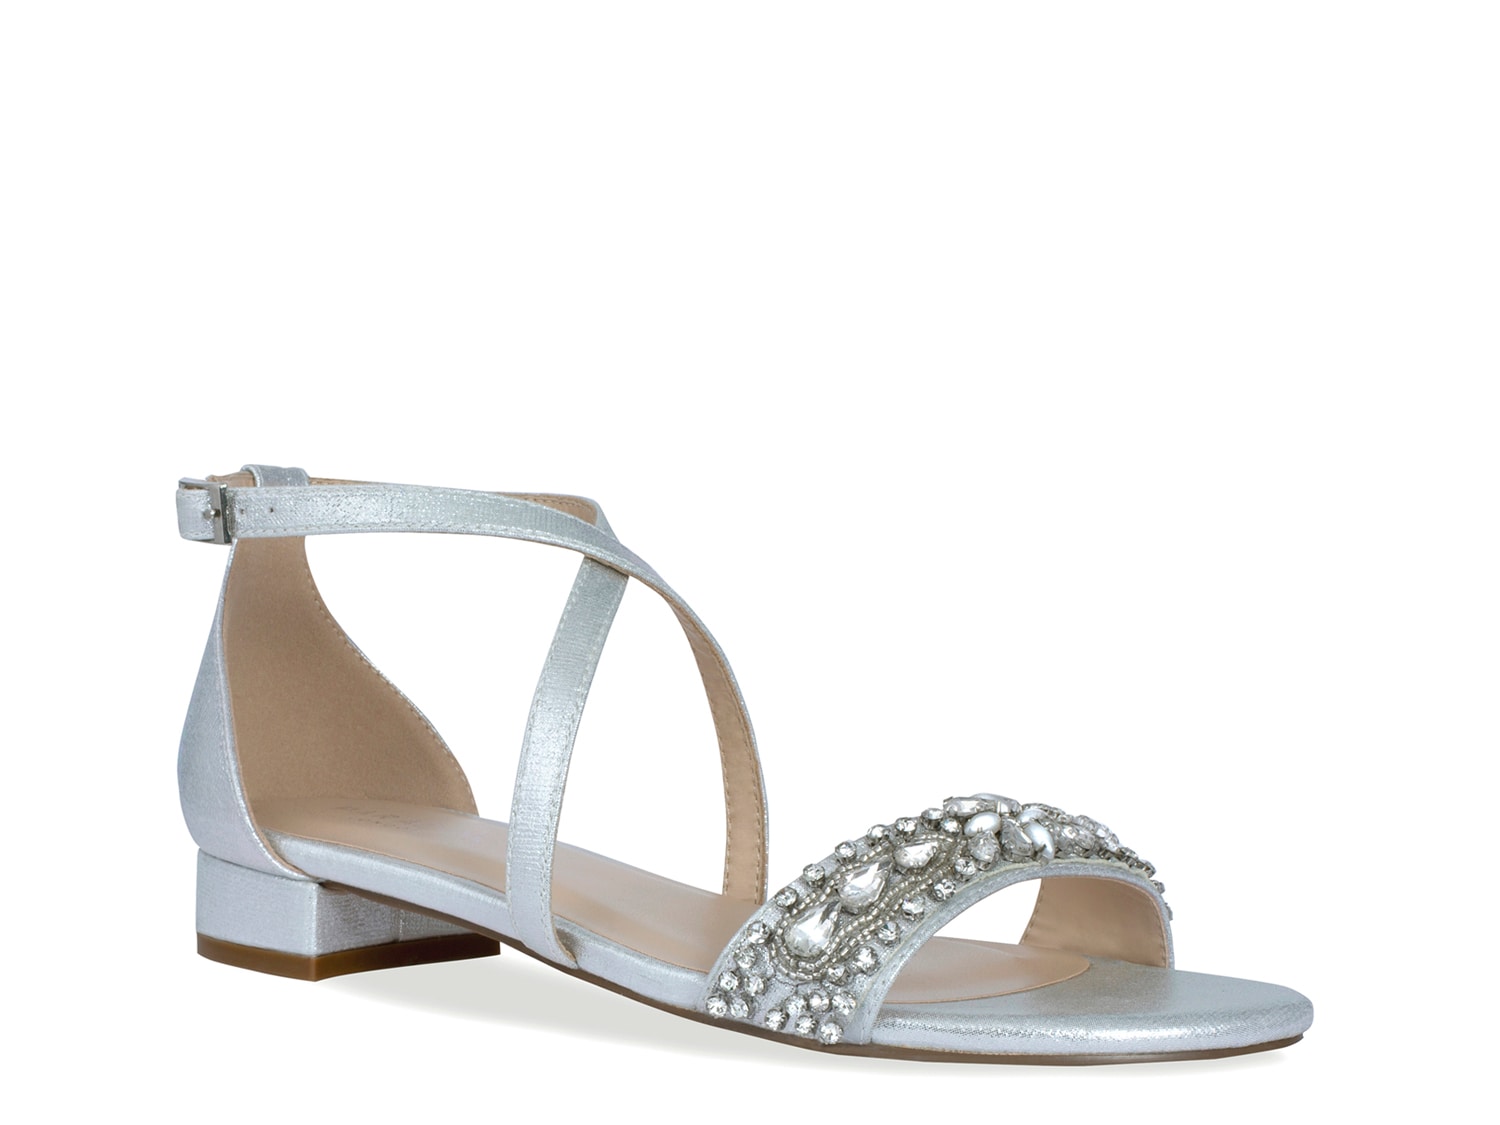 Women's high heel buckle sandals + Best Buy Price - Arad Branding